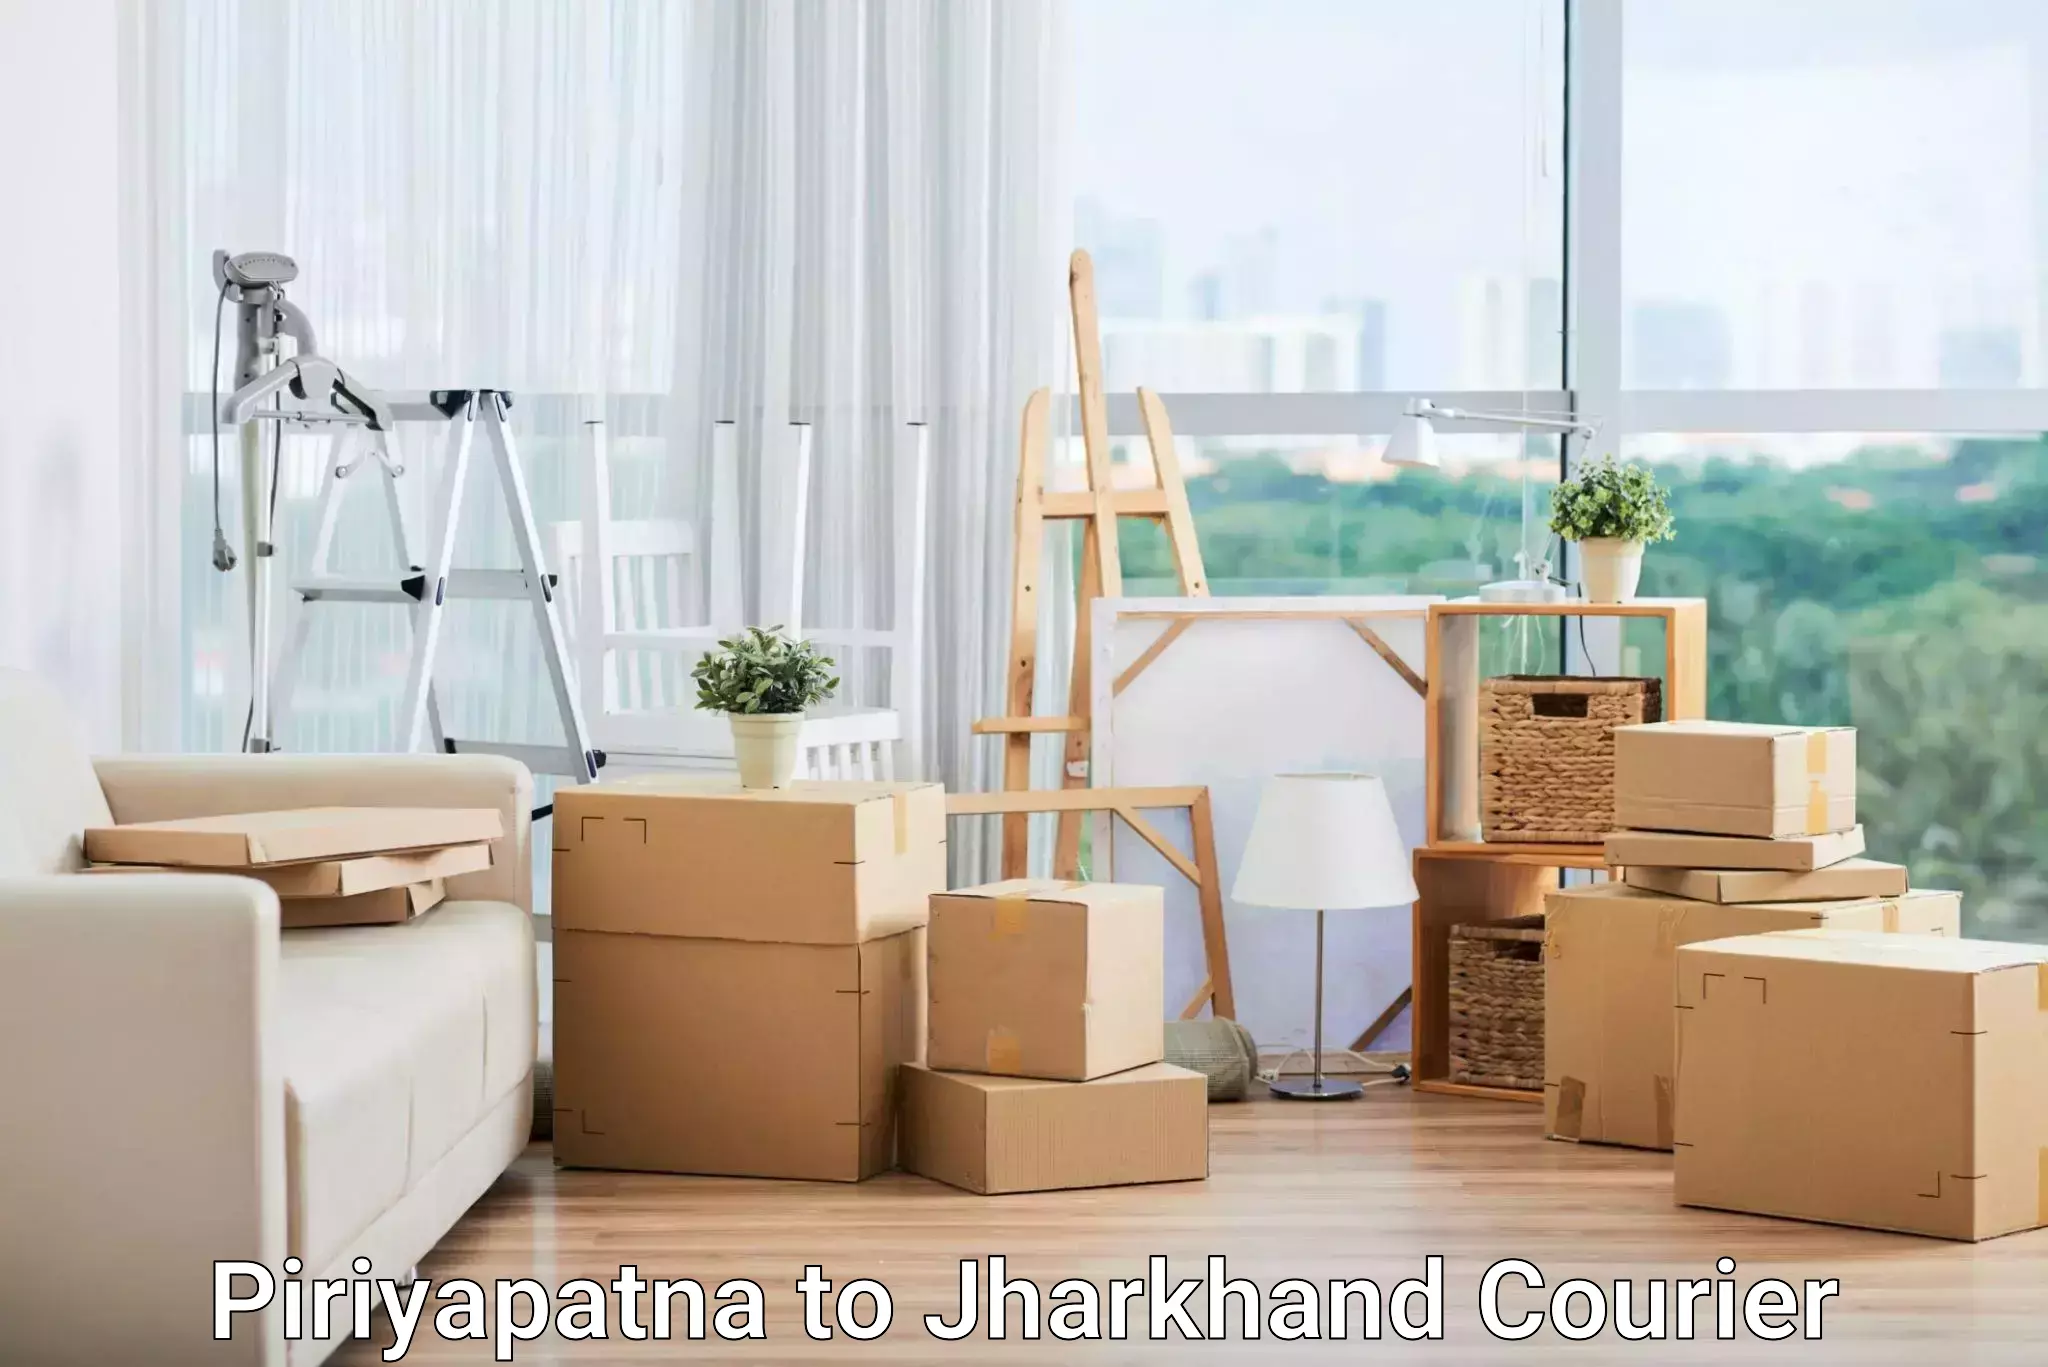 Cost-effective shipping solutions Piriyapatna to Daltonganj